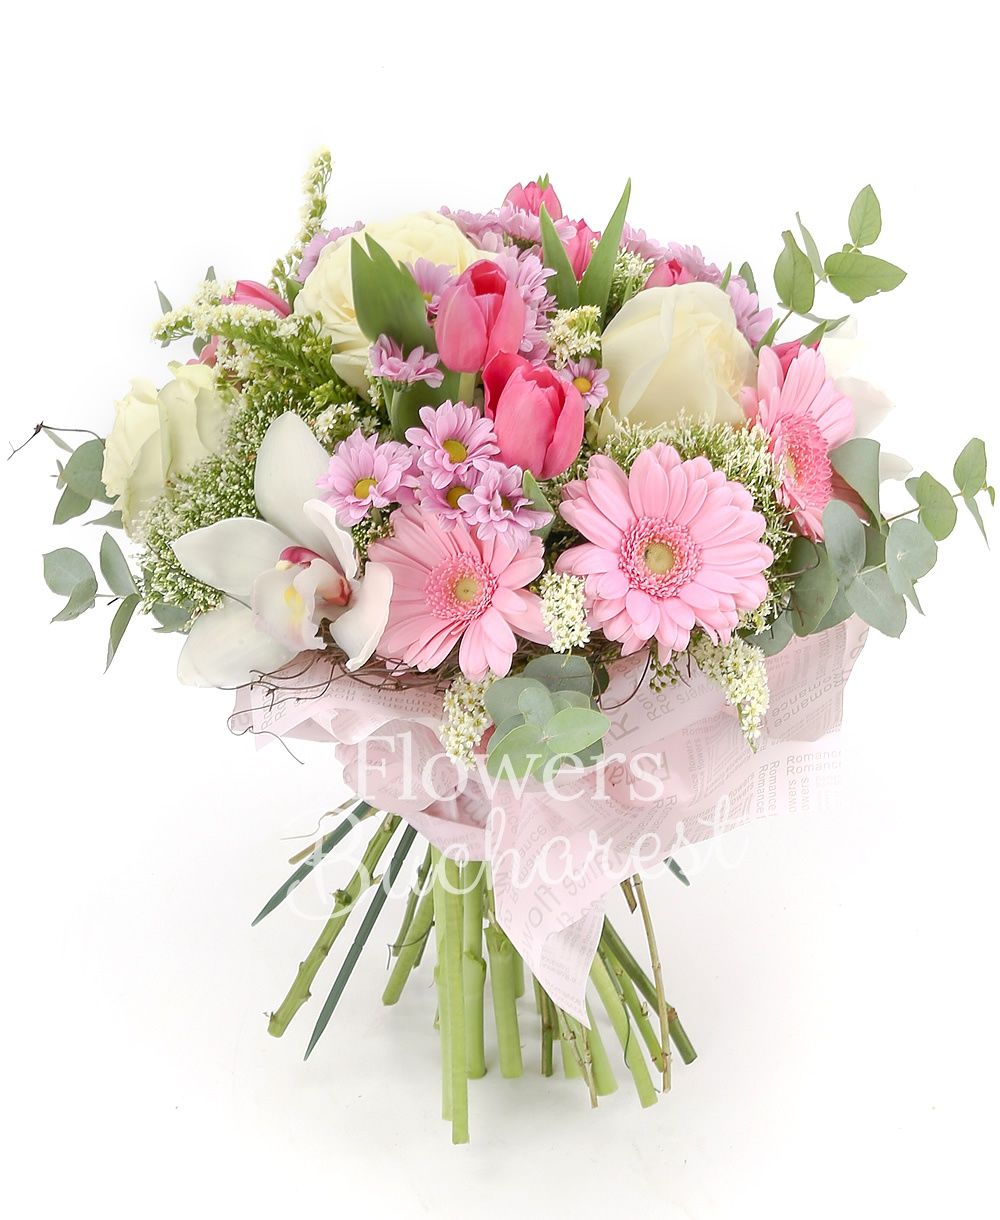 3 white roses, 5 pink gerberas, white cymbidium, 10 pink tulips, 4 white trachelium, 5 pink santini, 2 solidago, greenery